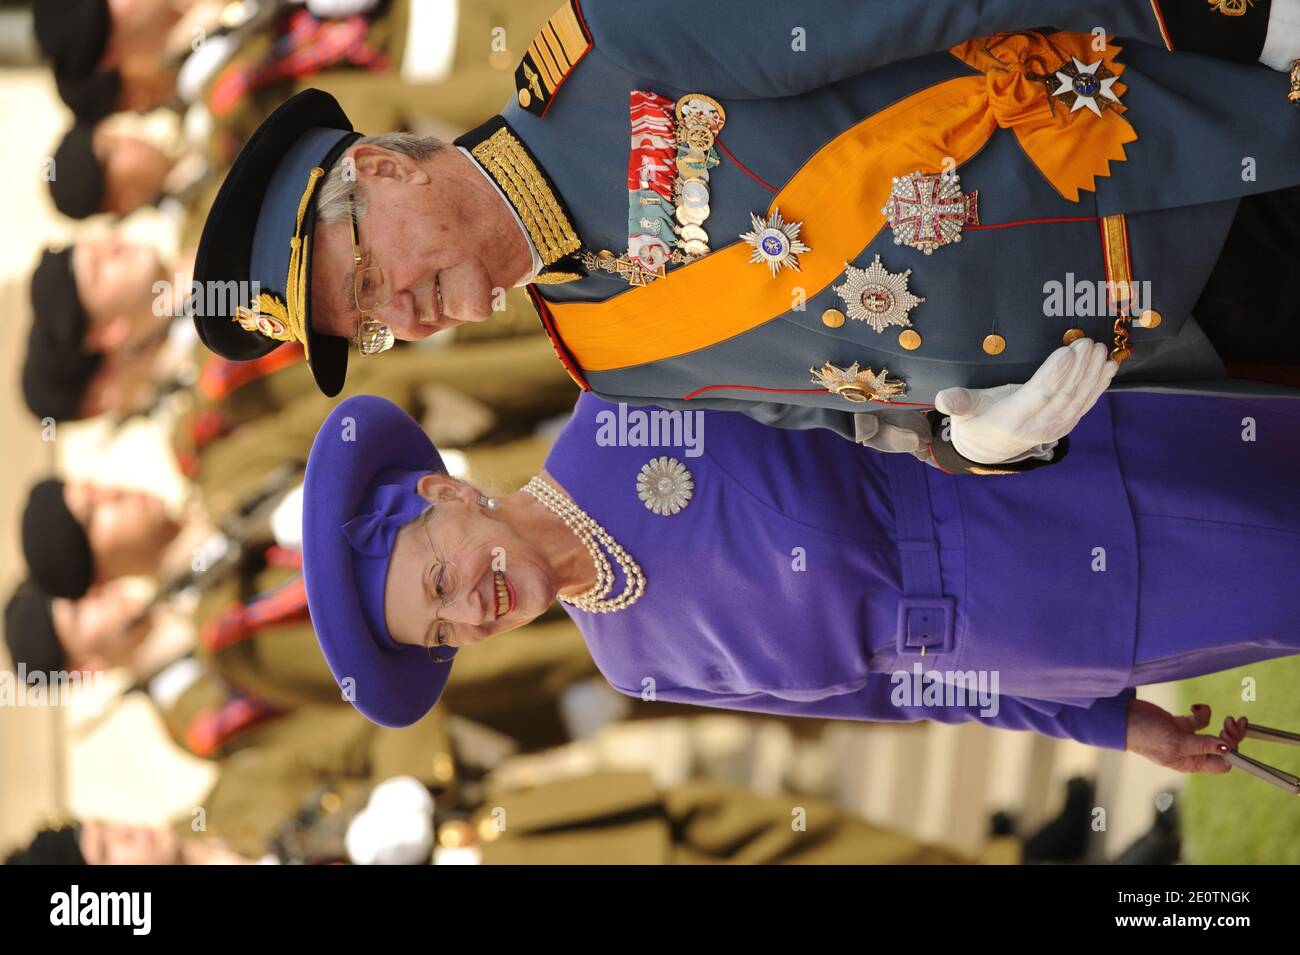 La reine Margrethe II du Danemark et le prince Consort Henrik du Danemark quittent la cathédrale notre-Dame de Luxembourg, à Luxembourg, le 20 octobre 2012, après la cérémonie de mariage du Grand-duc héréditaire Guillaume du Luxembourg et de la princesse Stéphanie du Luxembourg. Le Grand-duc héréditaire de Luxembourg, âgé de 30 ans, est le dernier prince héréditaire d'Europe à se marier, épousant sa mariée de 28 ans de la comtesse belge dans une somptueuse cérémonie de 2 jours. Photo de Thierry Orban/ABACAPRESS.COM Banque D'Images